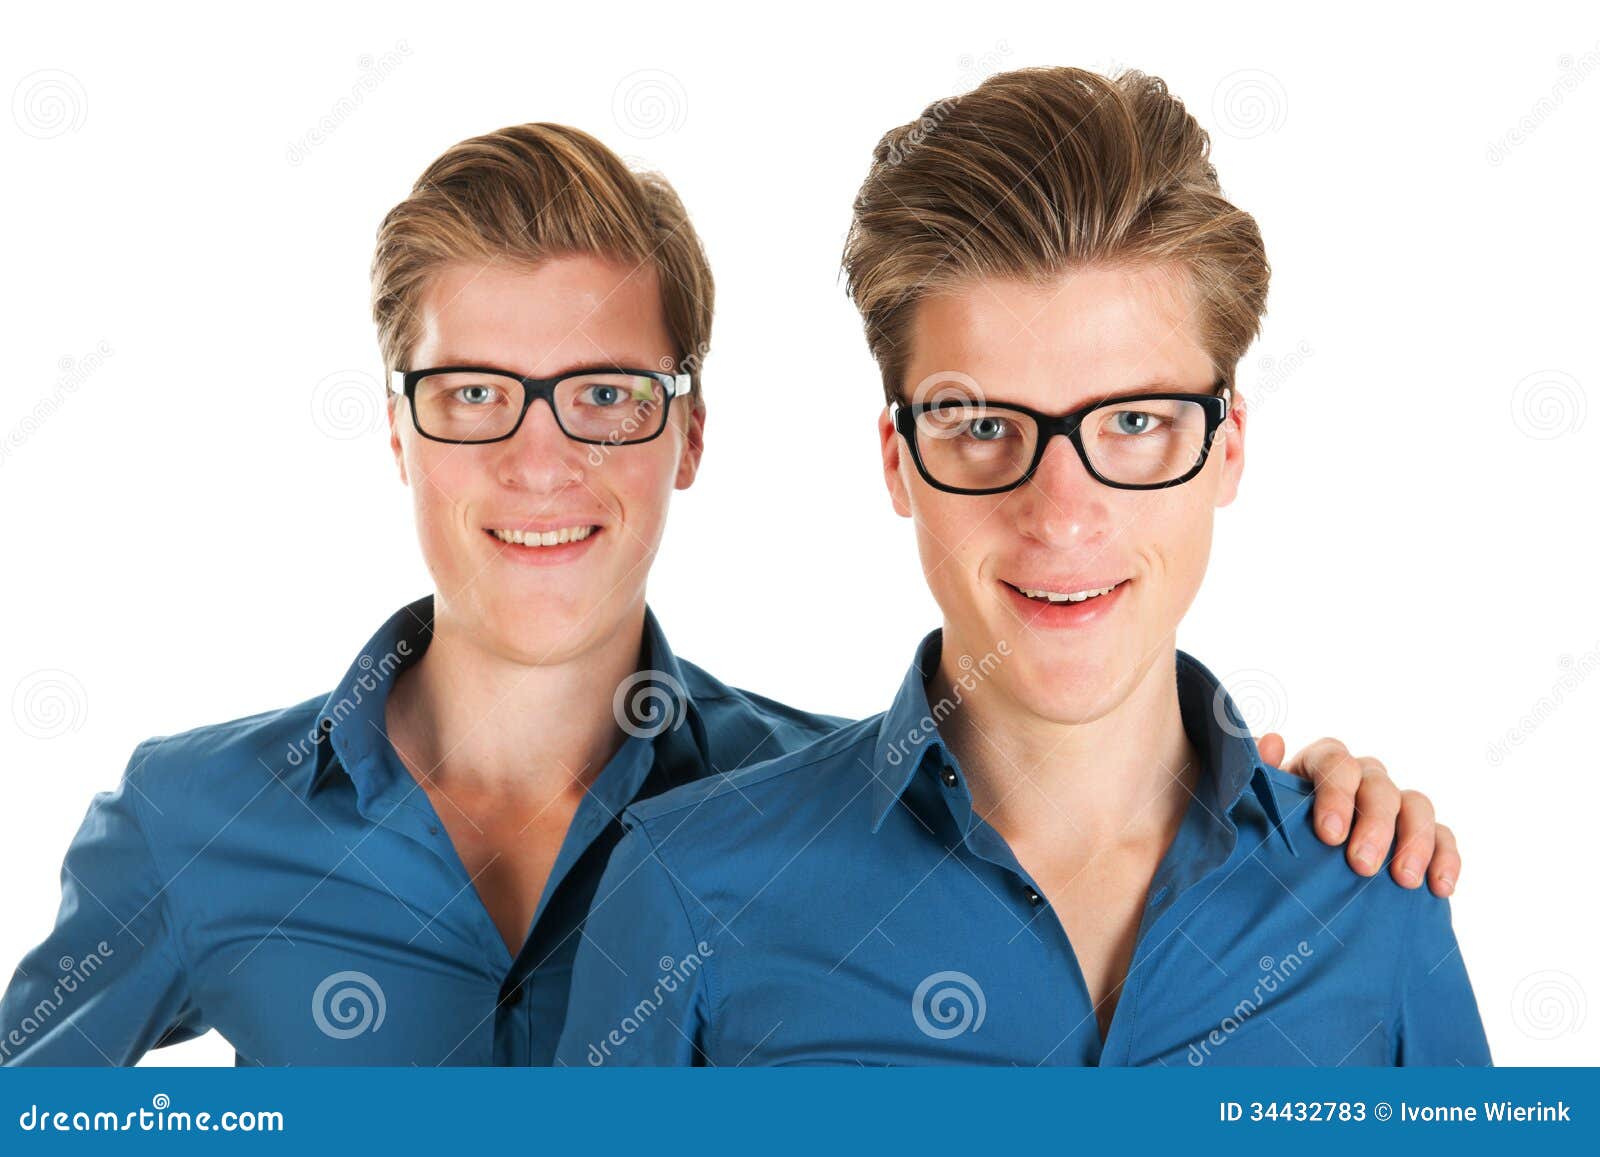 Майские близнецы мужчины. Близнецы. Близнецы взрослые. Три человека в очках. Близнецы взрослые мужчина и женщина.